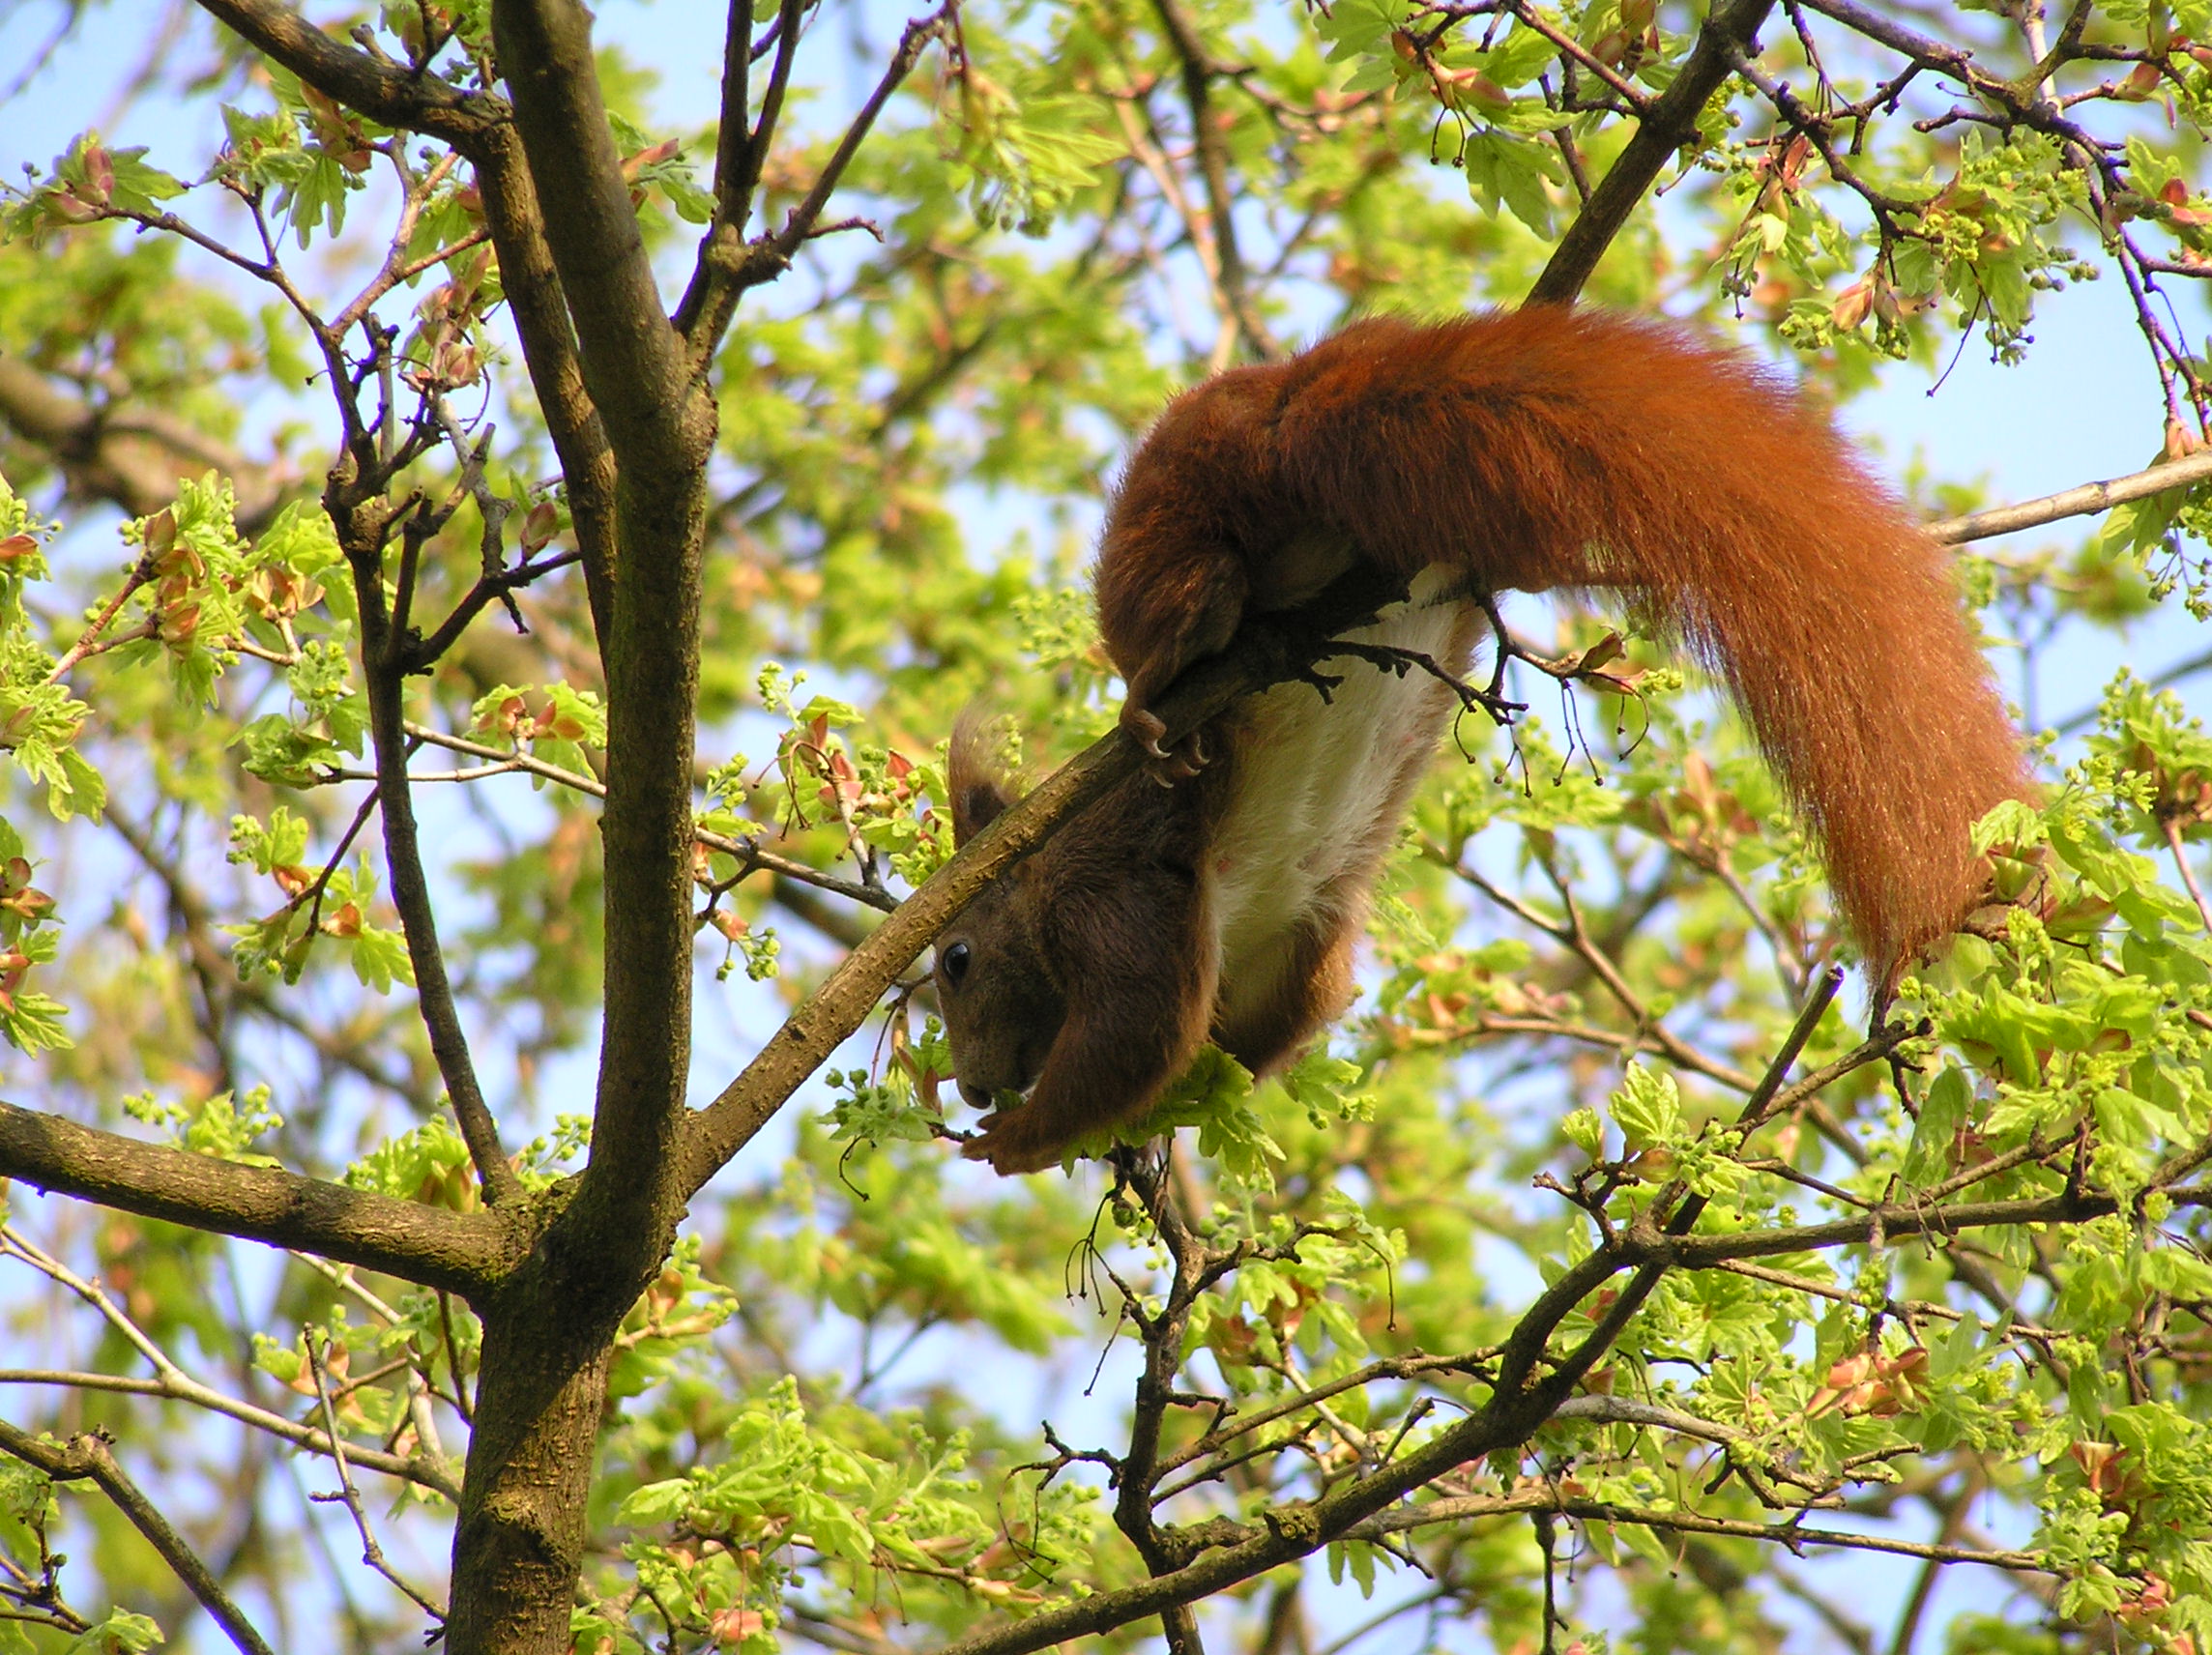 photos von einem eichhörnchen im baum